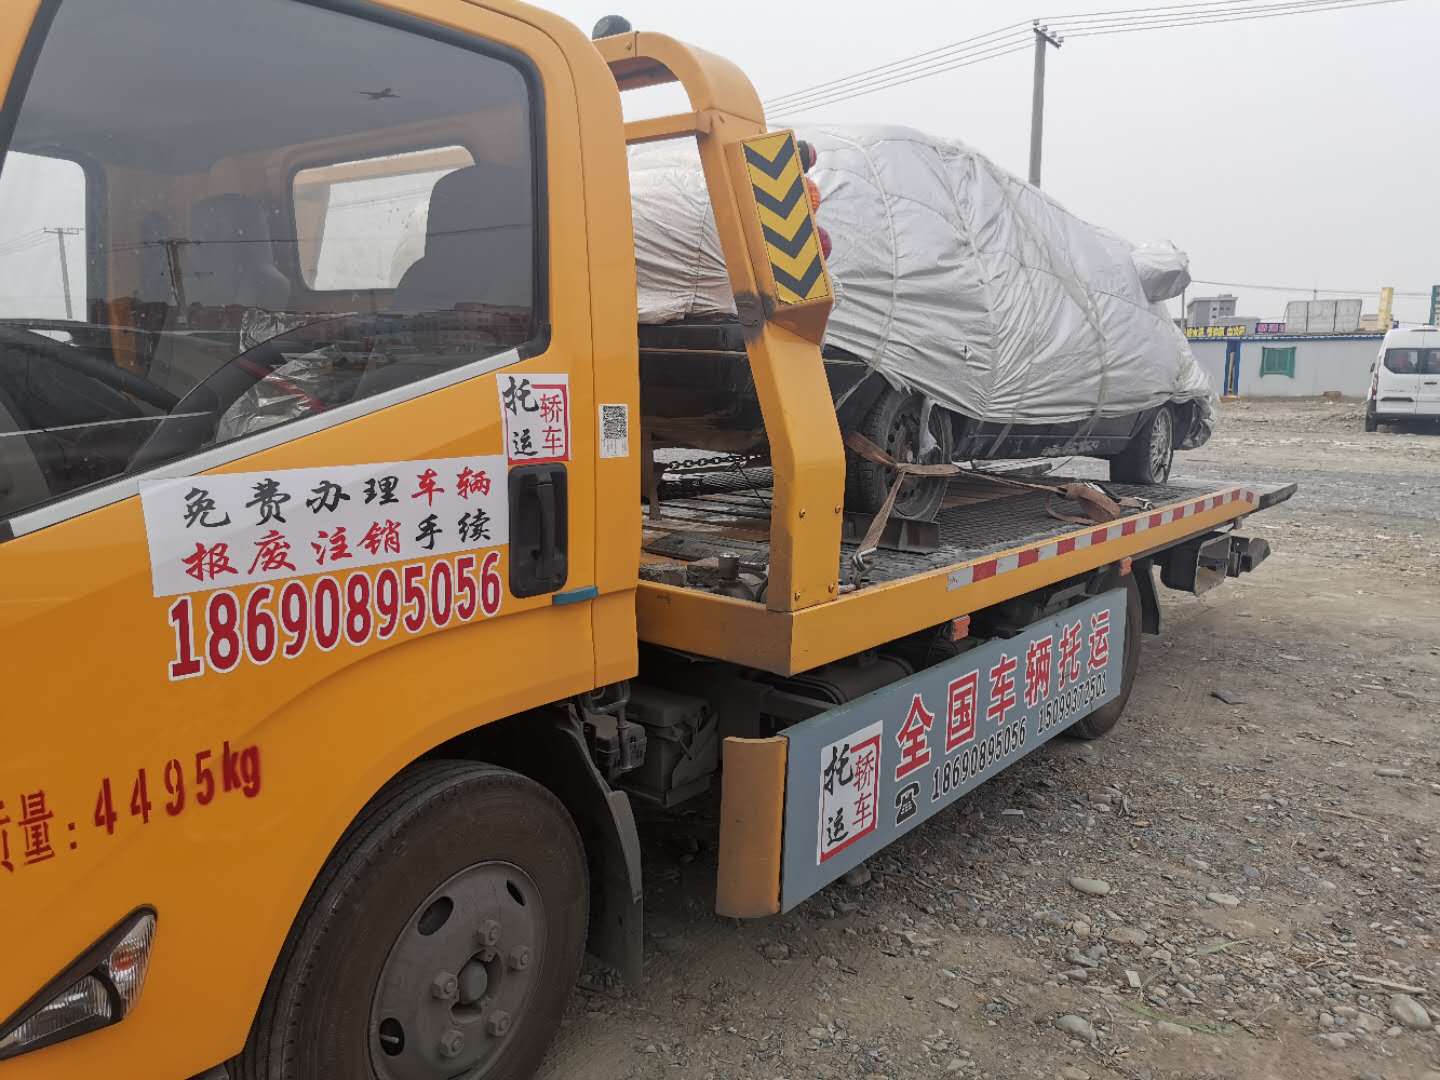 从新疆塔什库尔干塔吉克自治轿车托运到武汉亲民价